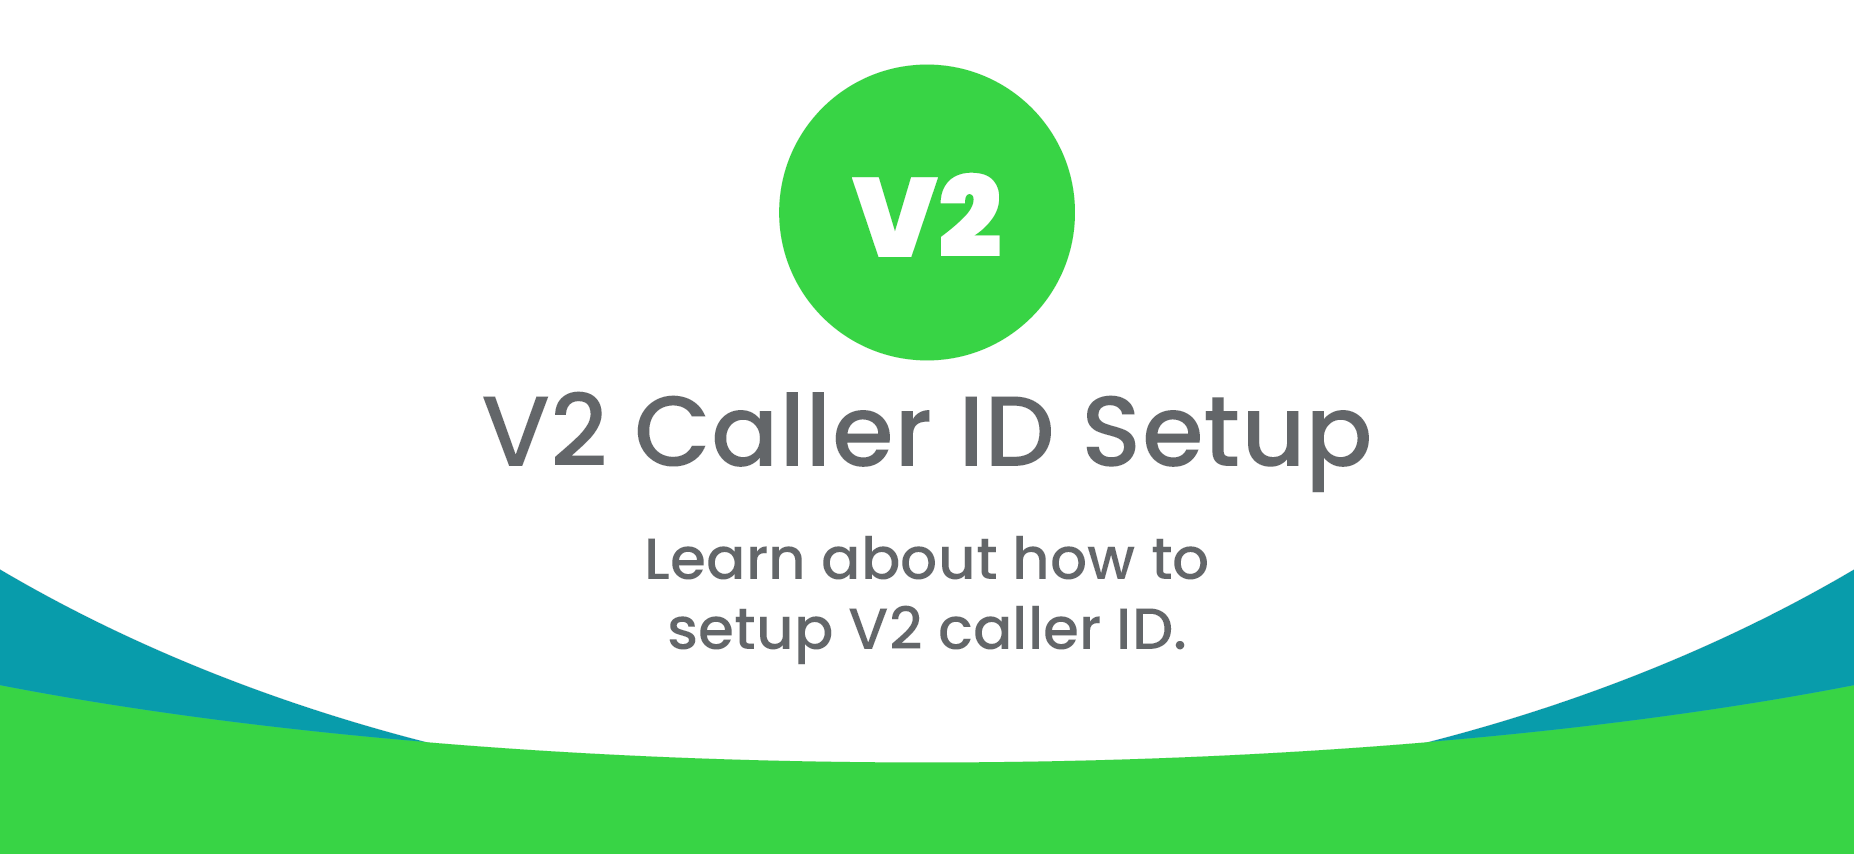 V2 Caller ID Setup